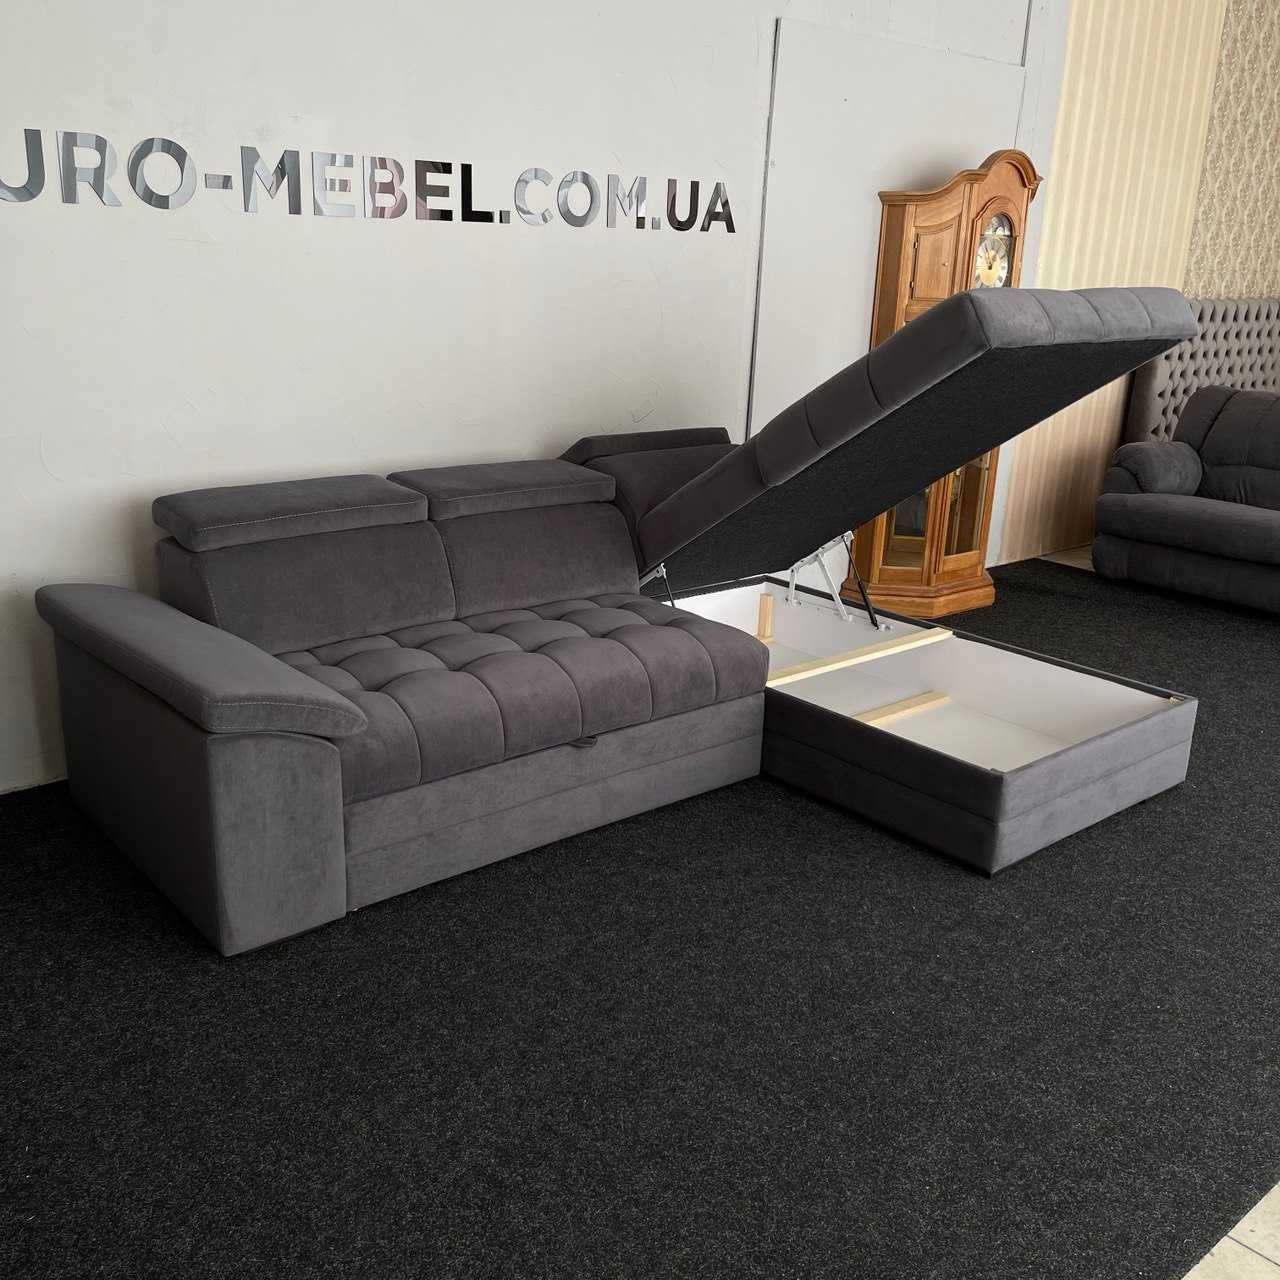 ЗНИЖКА Новий розкладний диван з Європи